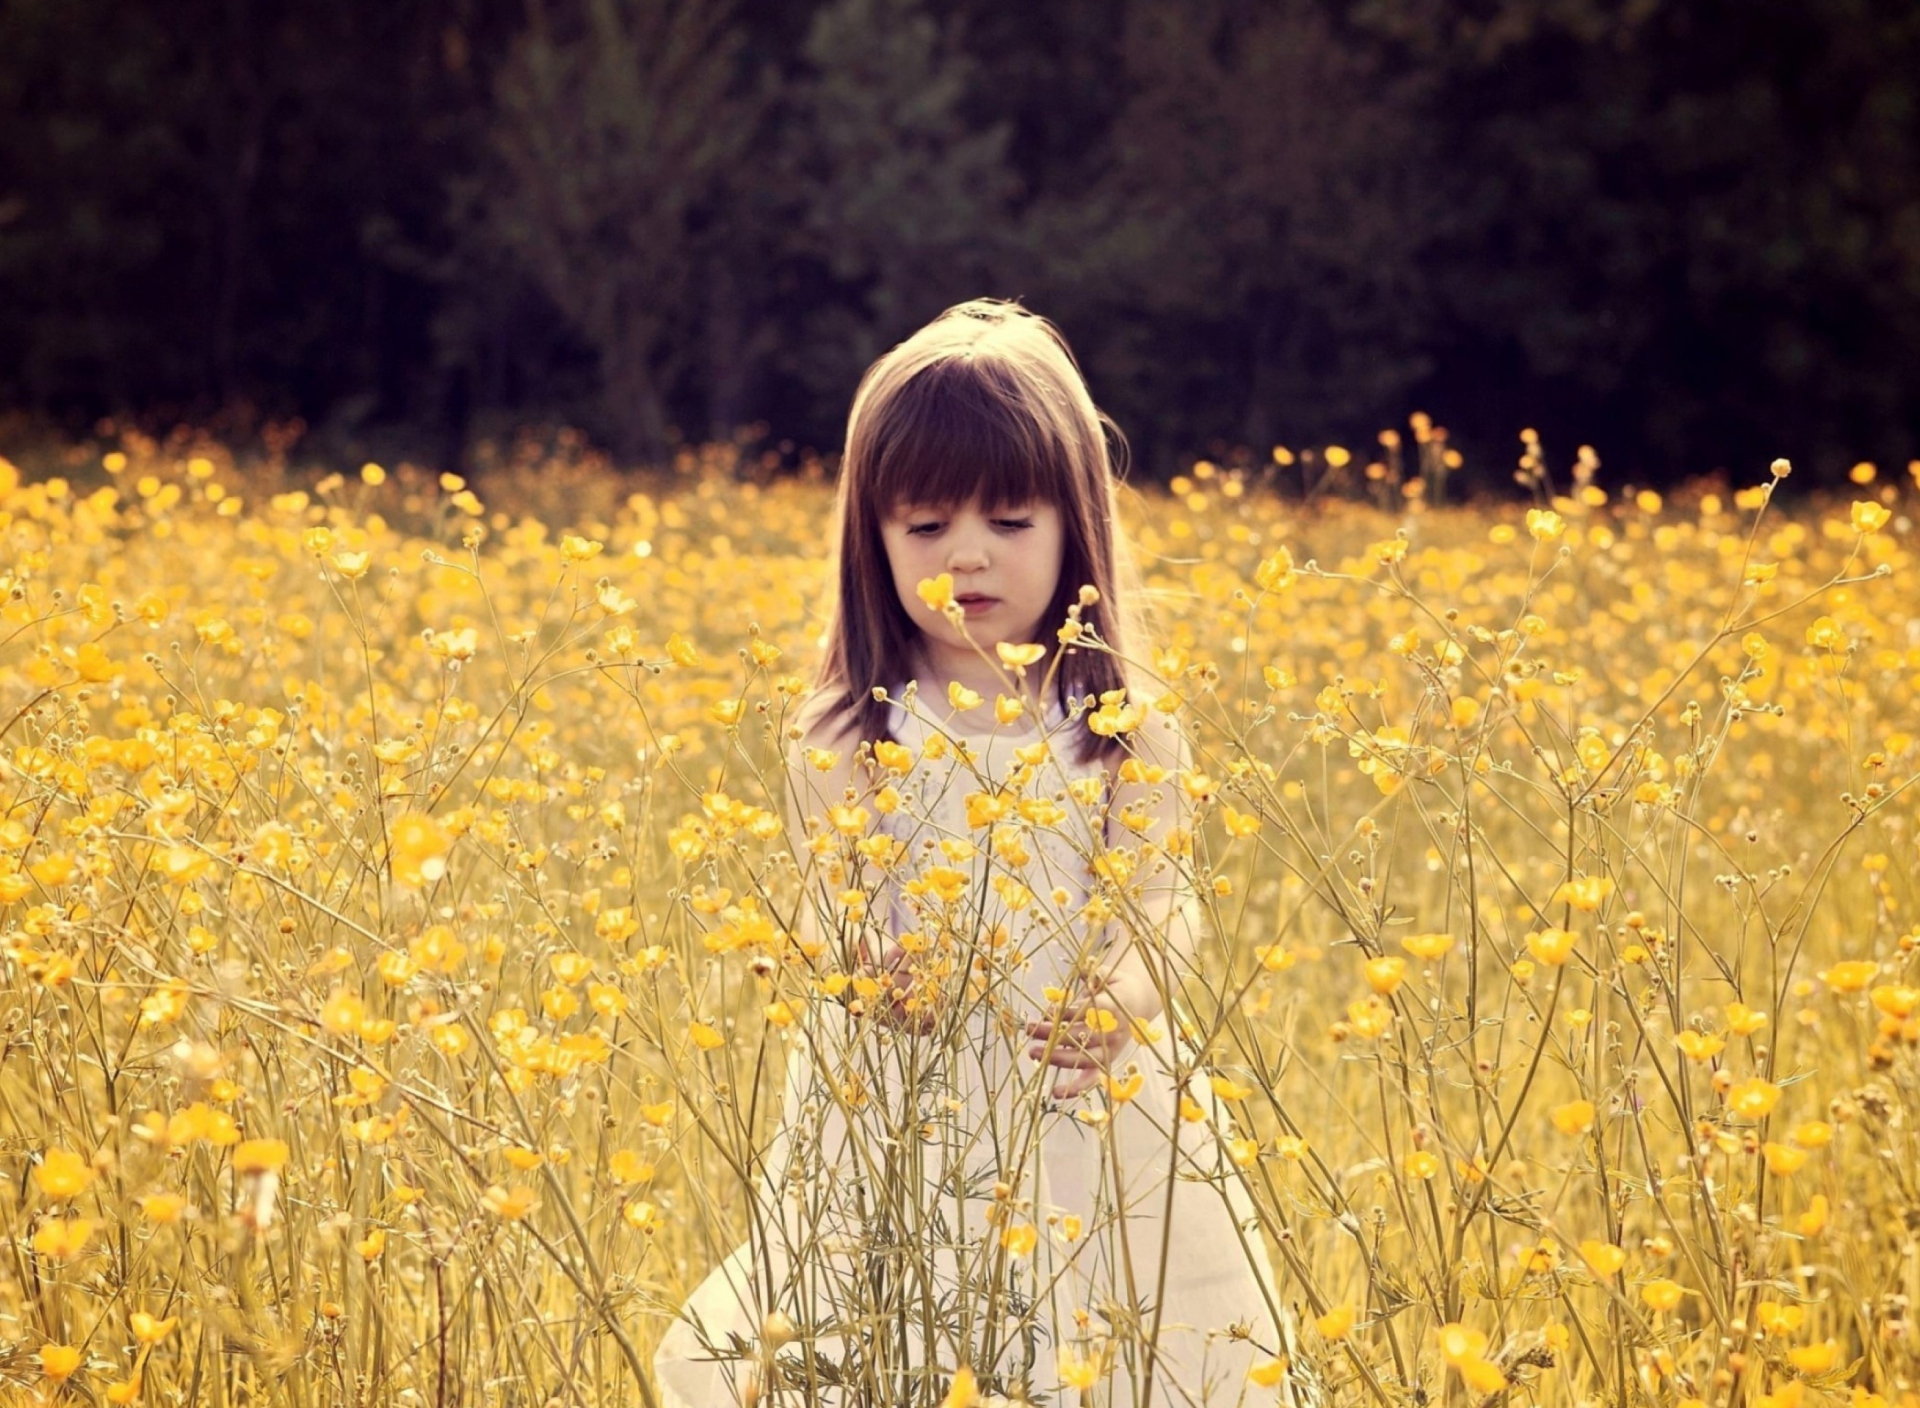 Обои Cute Little Girl In Flower Field 1920x1408